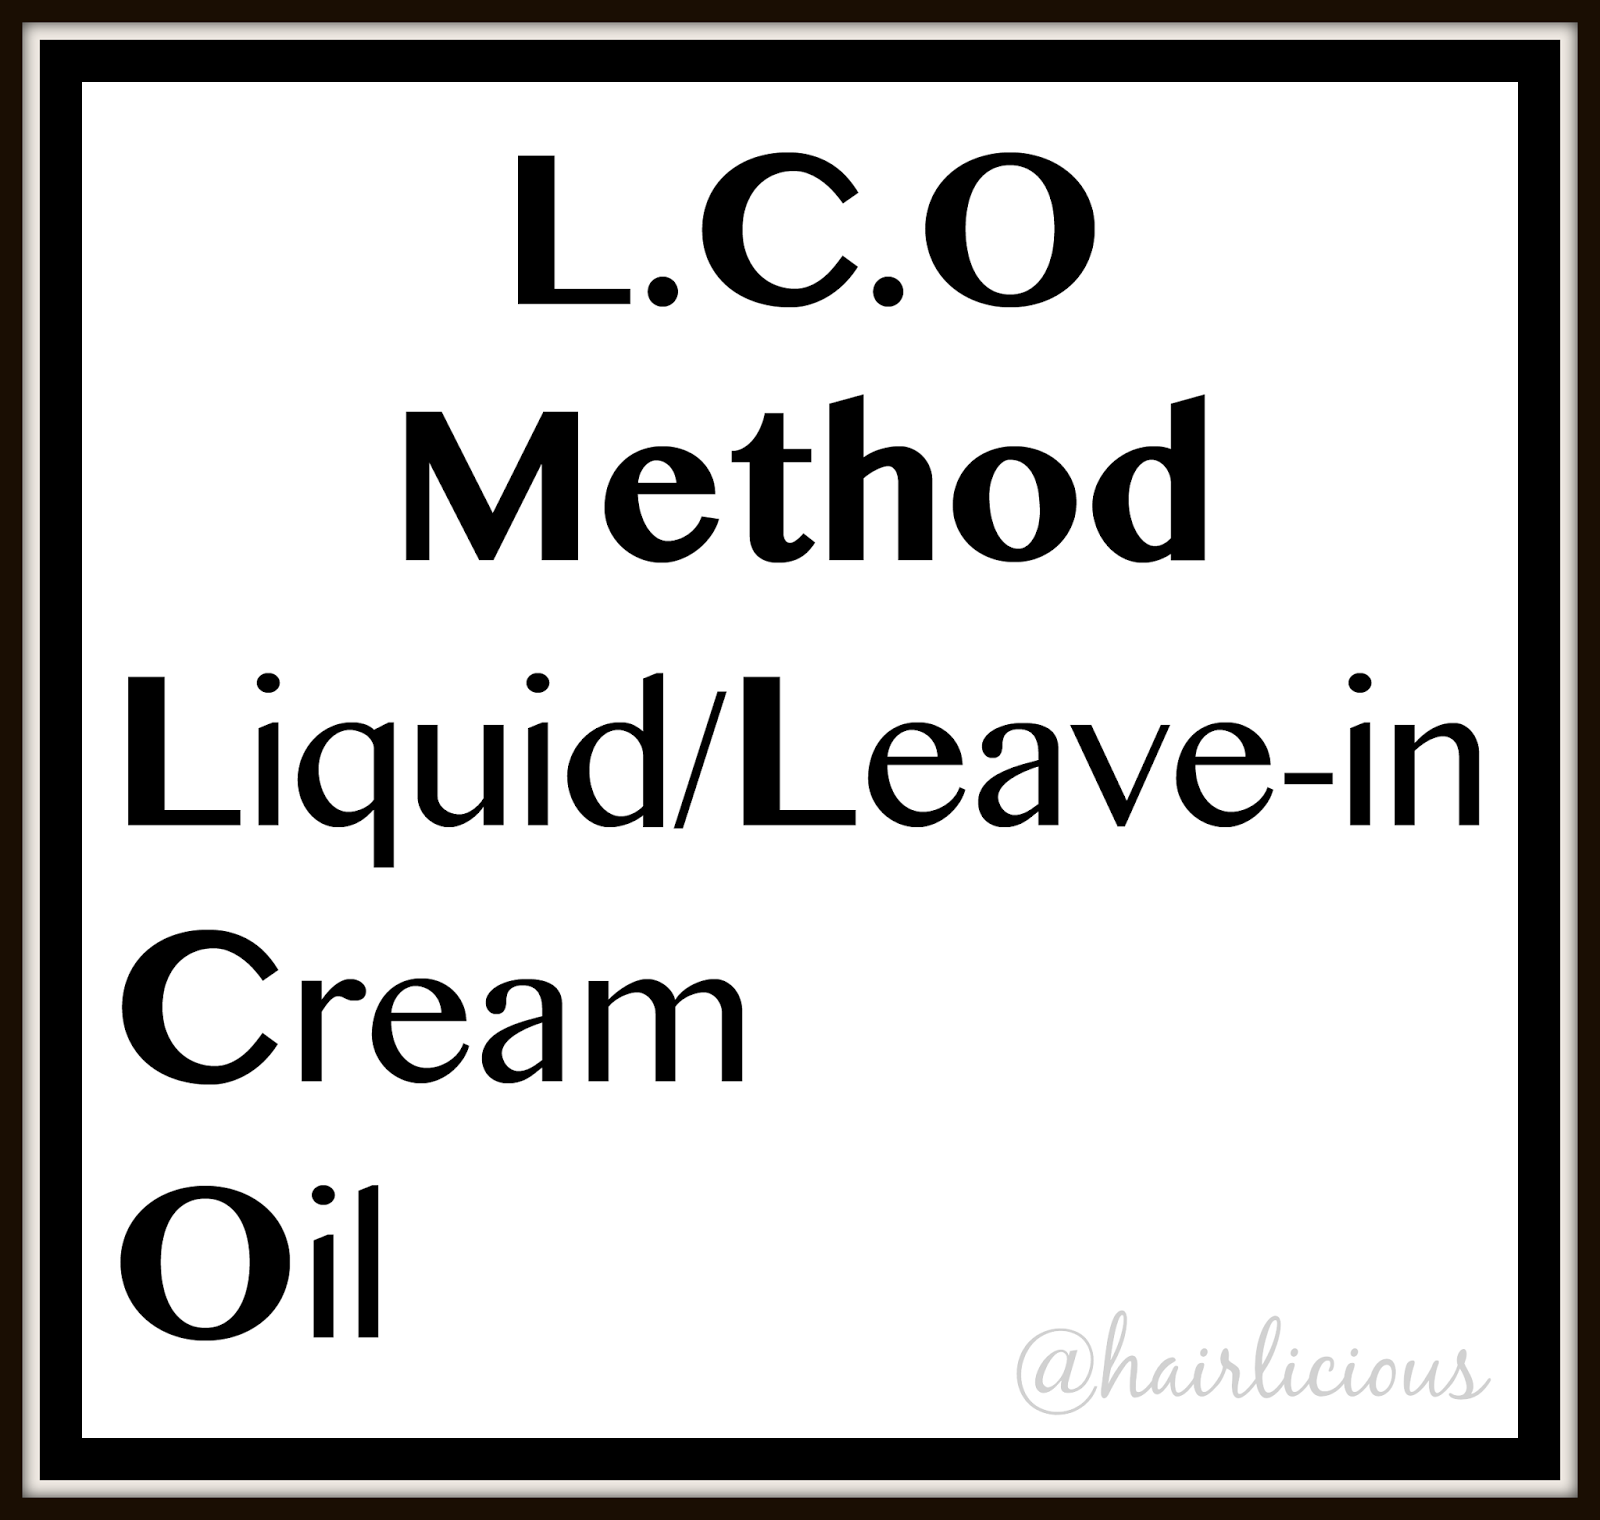 L.C.O - Liquid, Cream, Oil Method